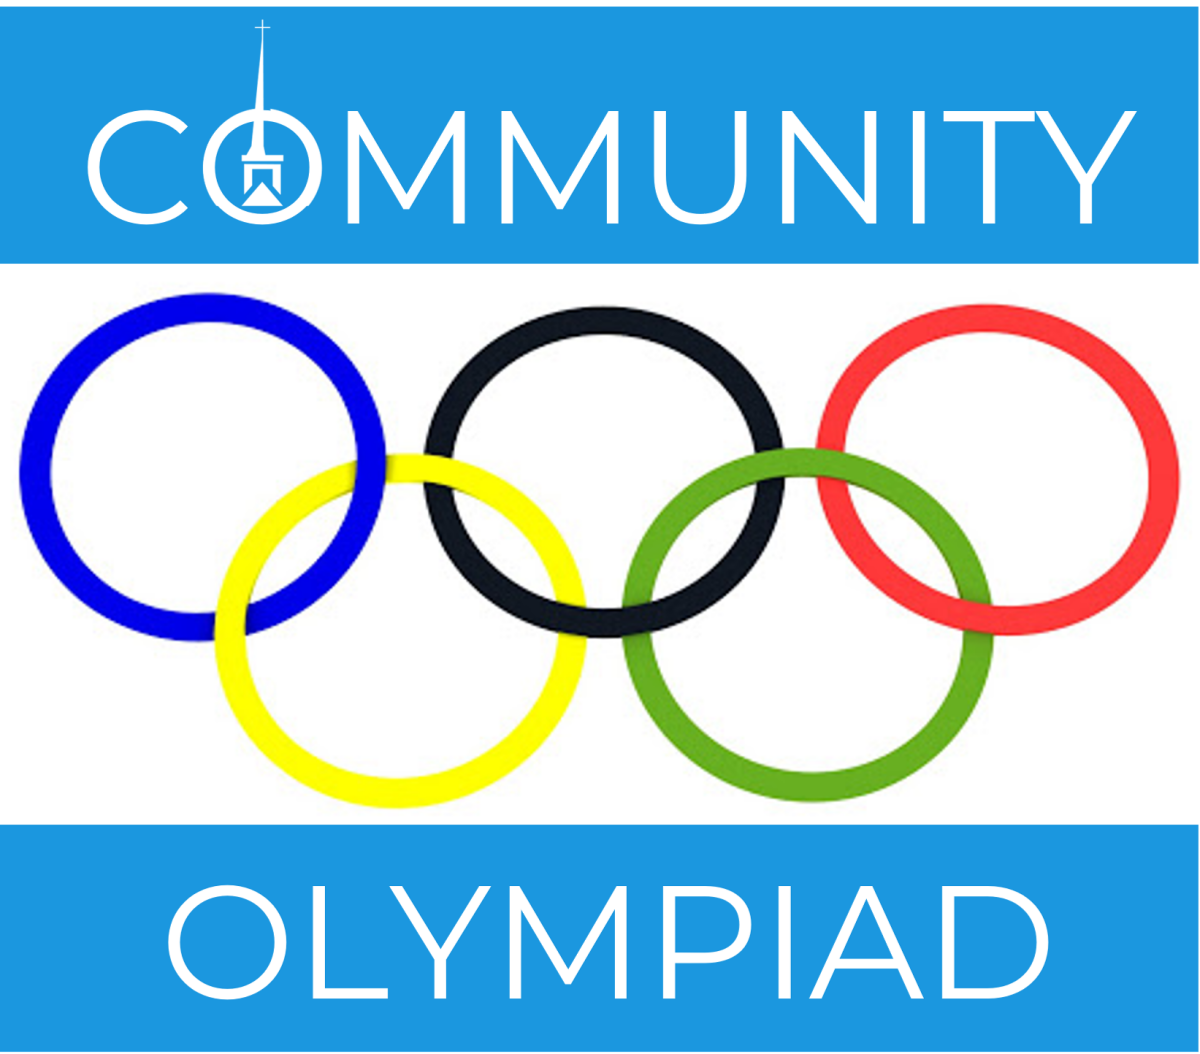 11 AM - Community Olympiad